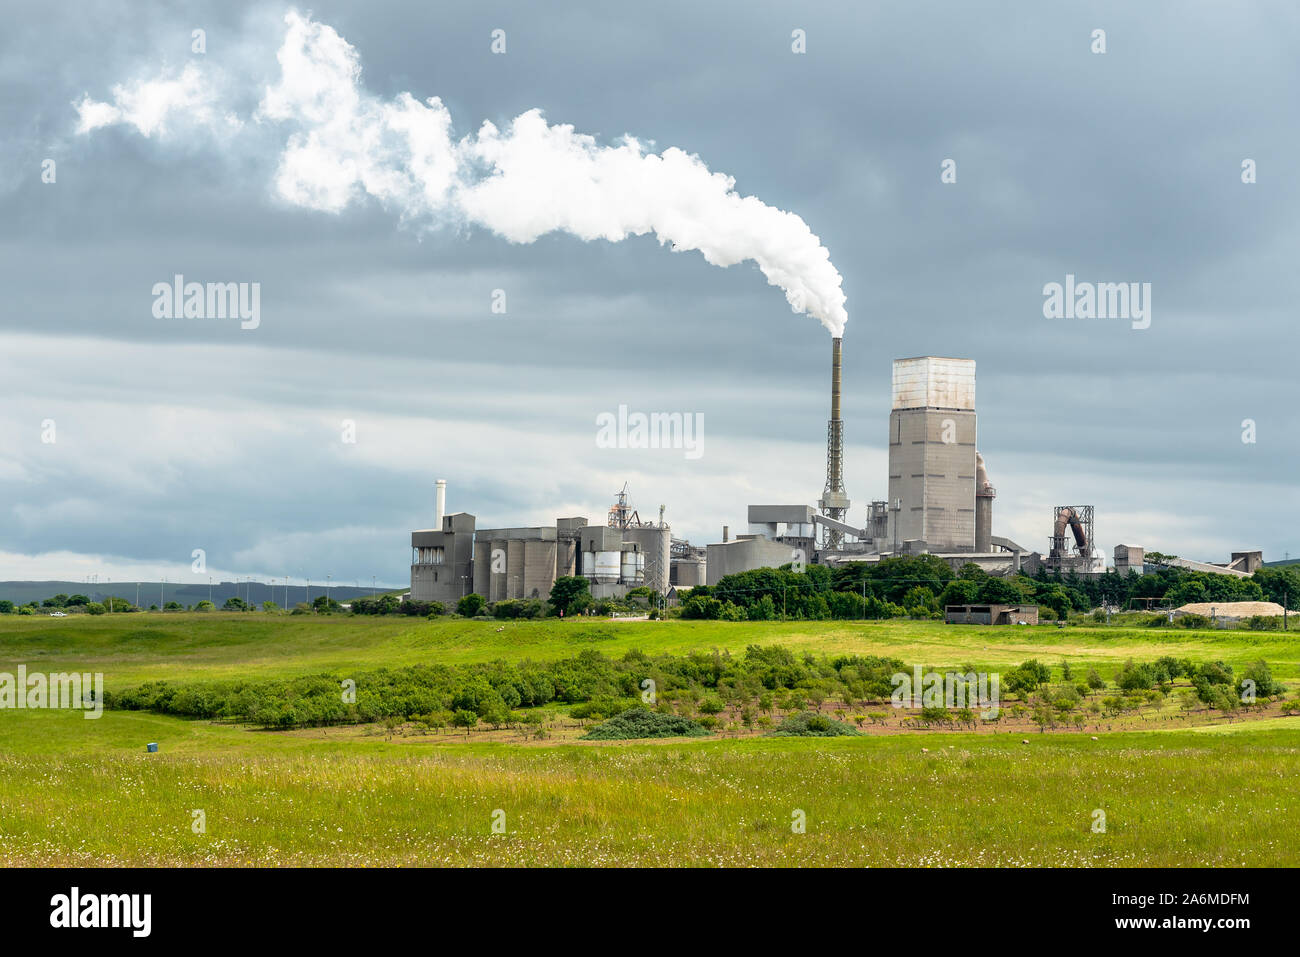 Usine de ciment dans la campagne écossaise sous un ciel d'orage. Concept de la pollution. Banque D'Images